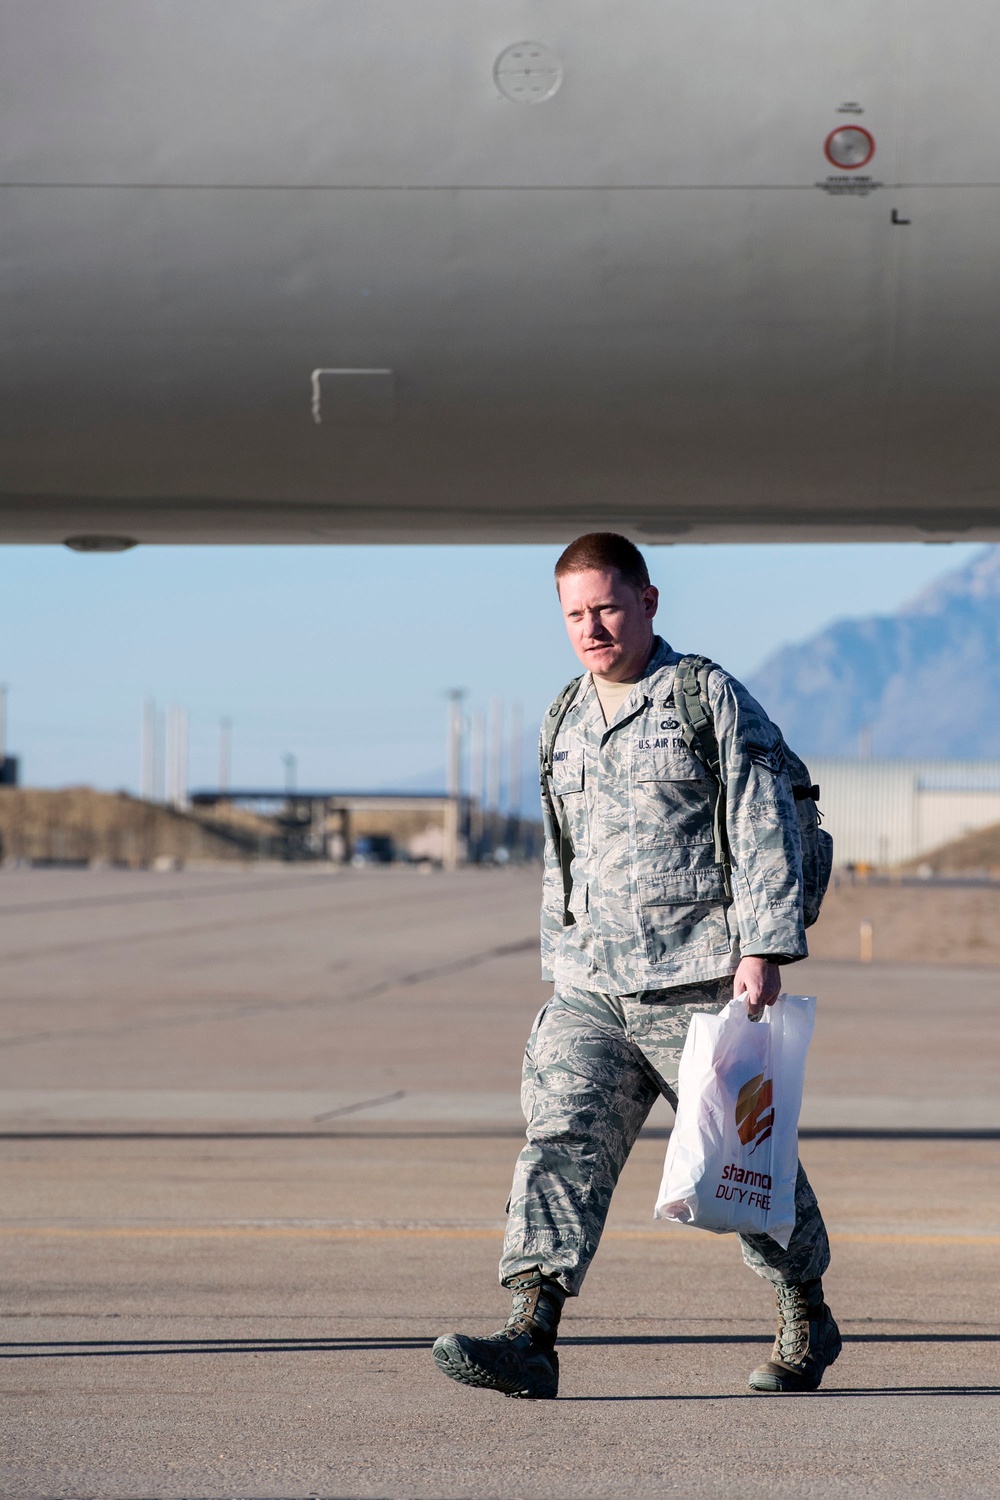 729th ACS Airmen return home